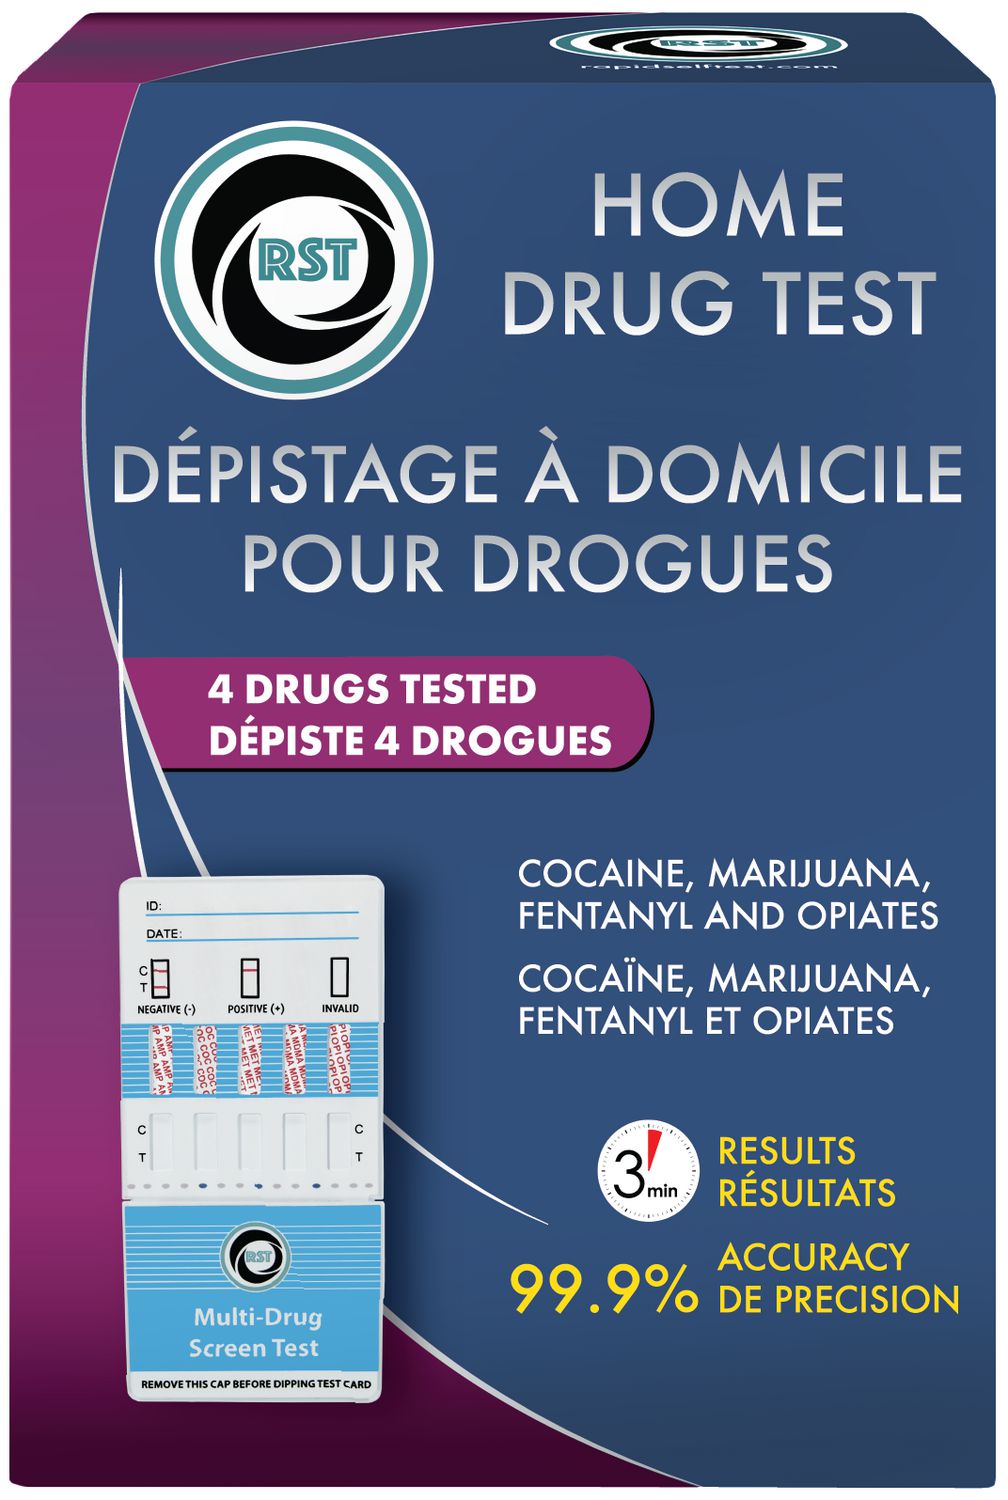 Depistage a Domicile Pour Drouge- Depiste 4 Drogues Test de drogue d'urine  depiste 4 drouges. 